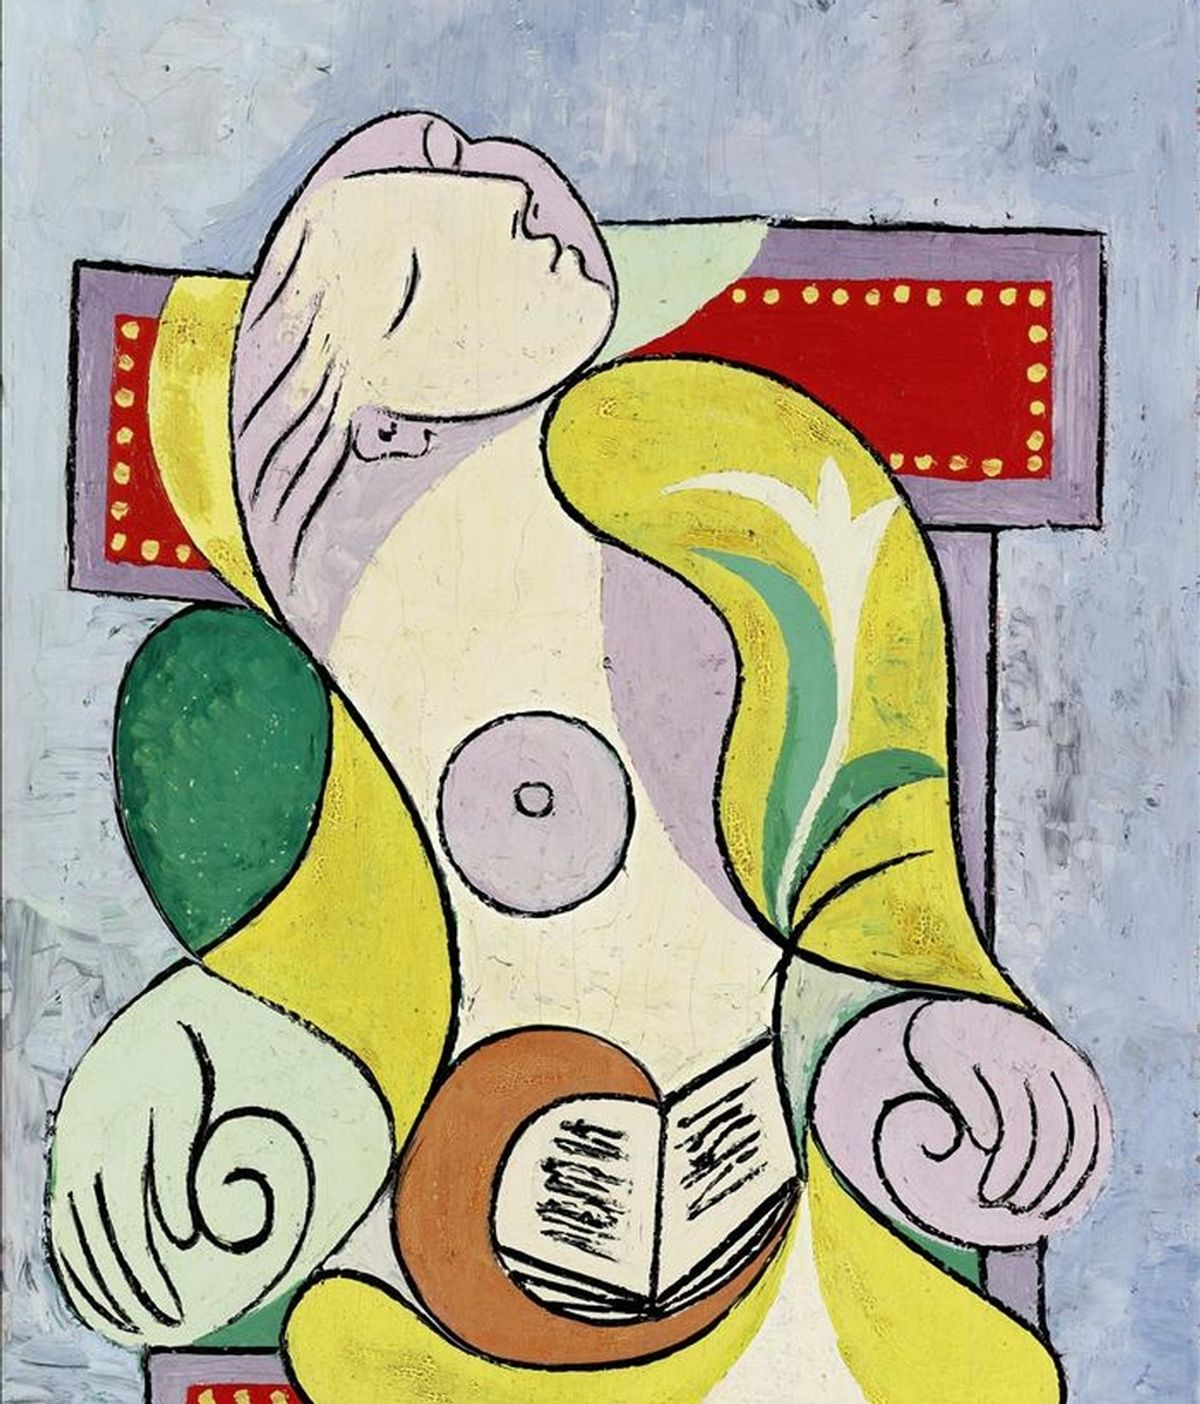 Reproducción de la pintura en óleo sobre lienzo del artista español Pablo Picasso "La Lecture" (1932), una de las más de cincuenta obras impresionistas y de arte moderno y contemporáneo que se exponen desde, en la sede de Sotheby's en Nueva York. EFE